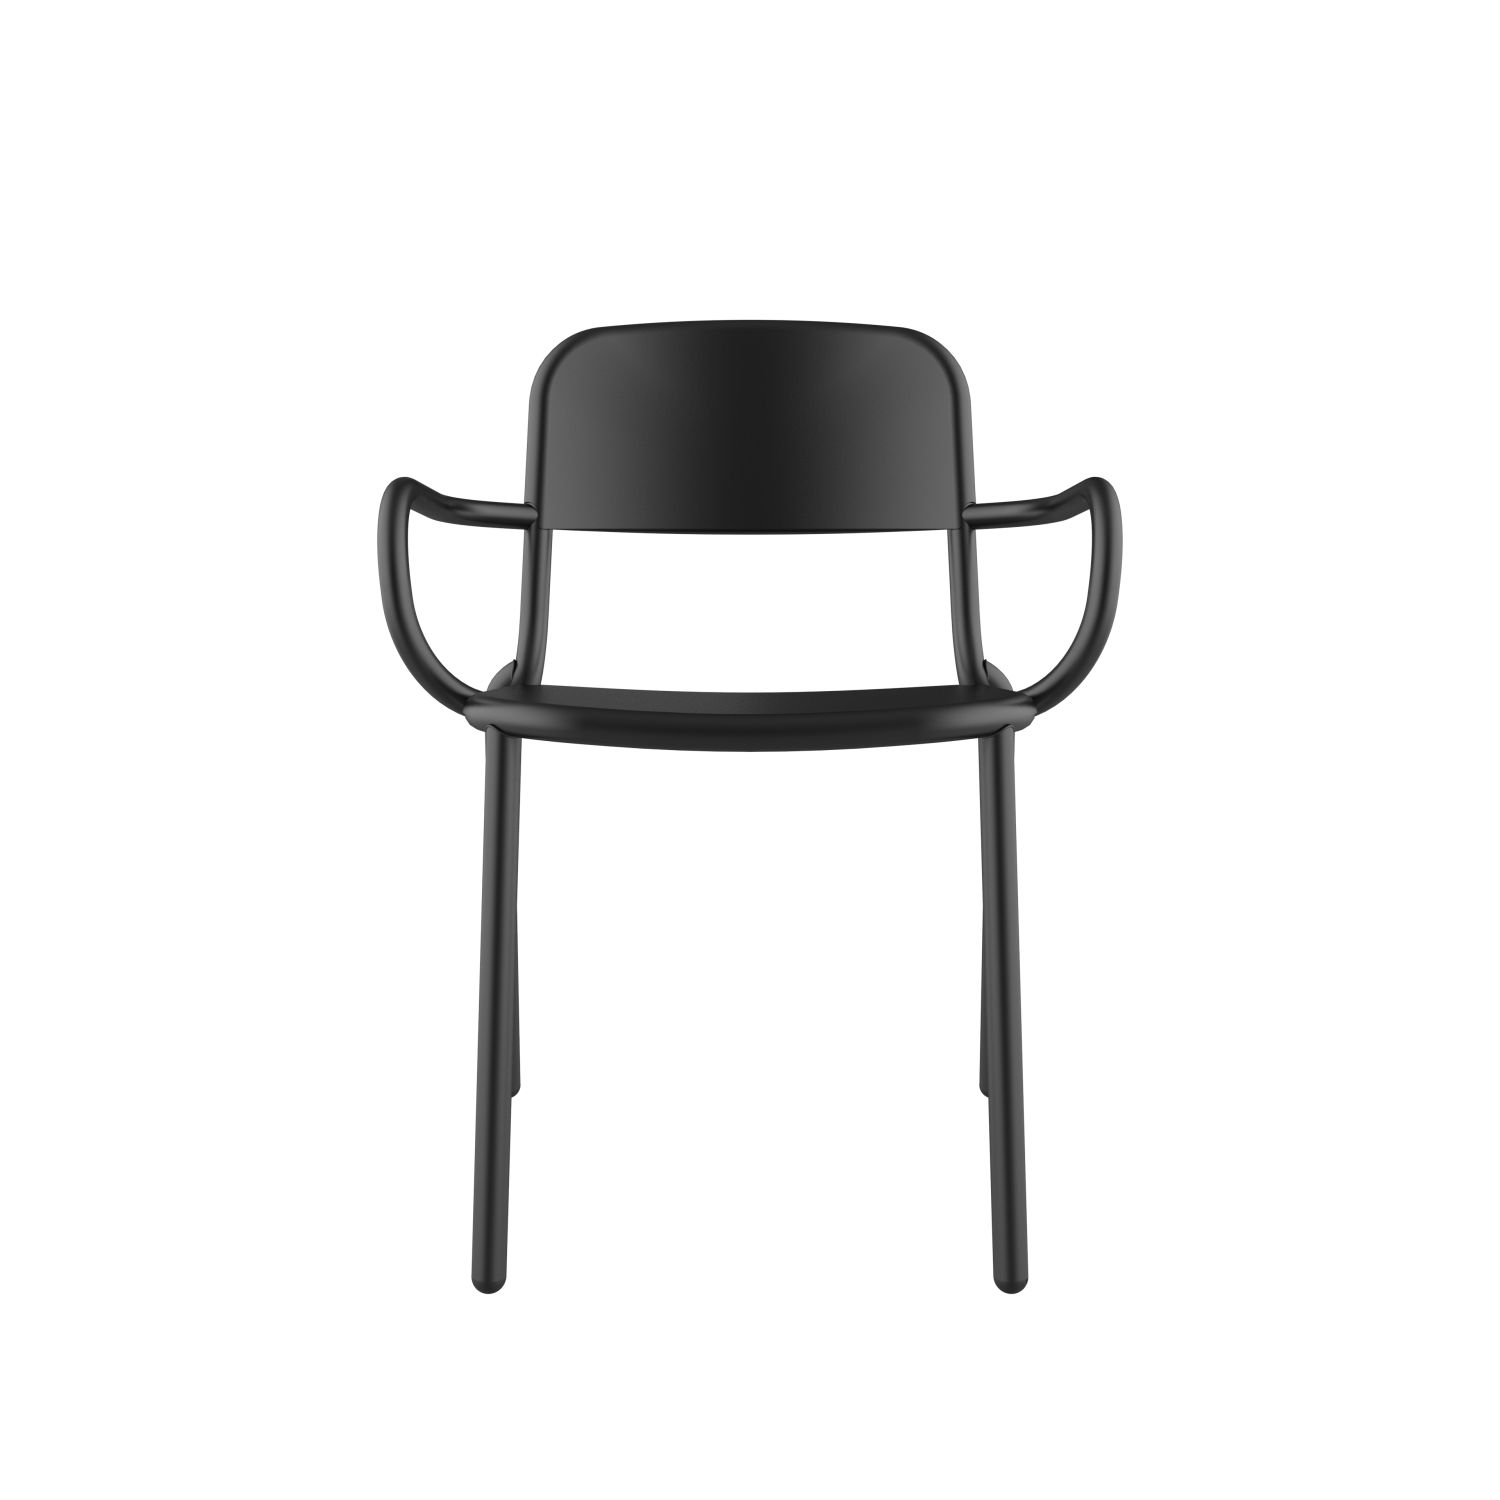 lensvelt studio stefan scholten loop chair stackable with armrests no perforation black ral9005